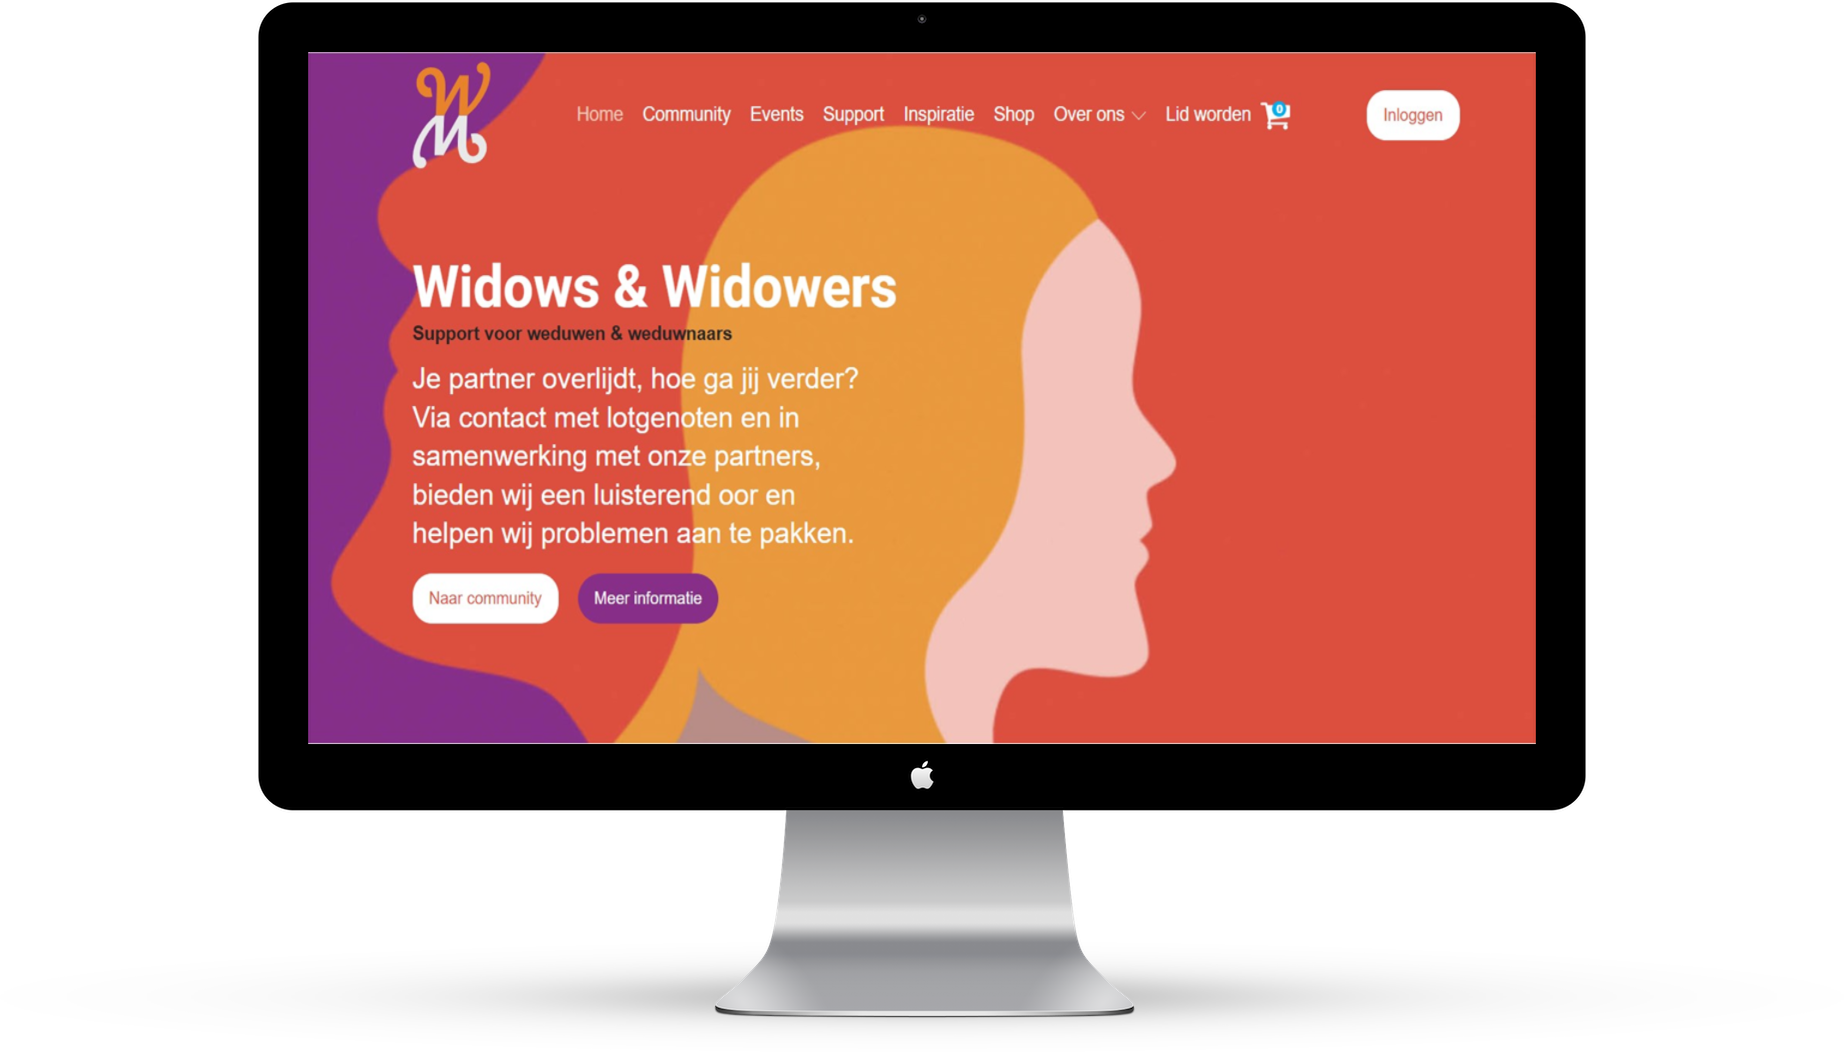 webshop widows for widows